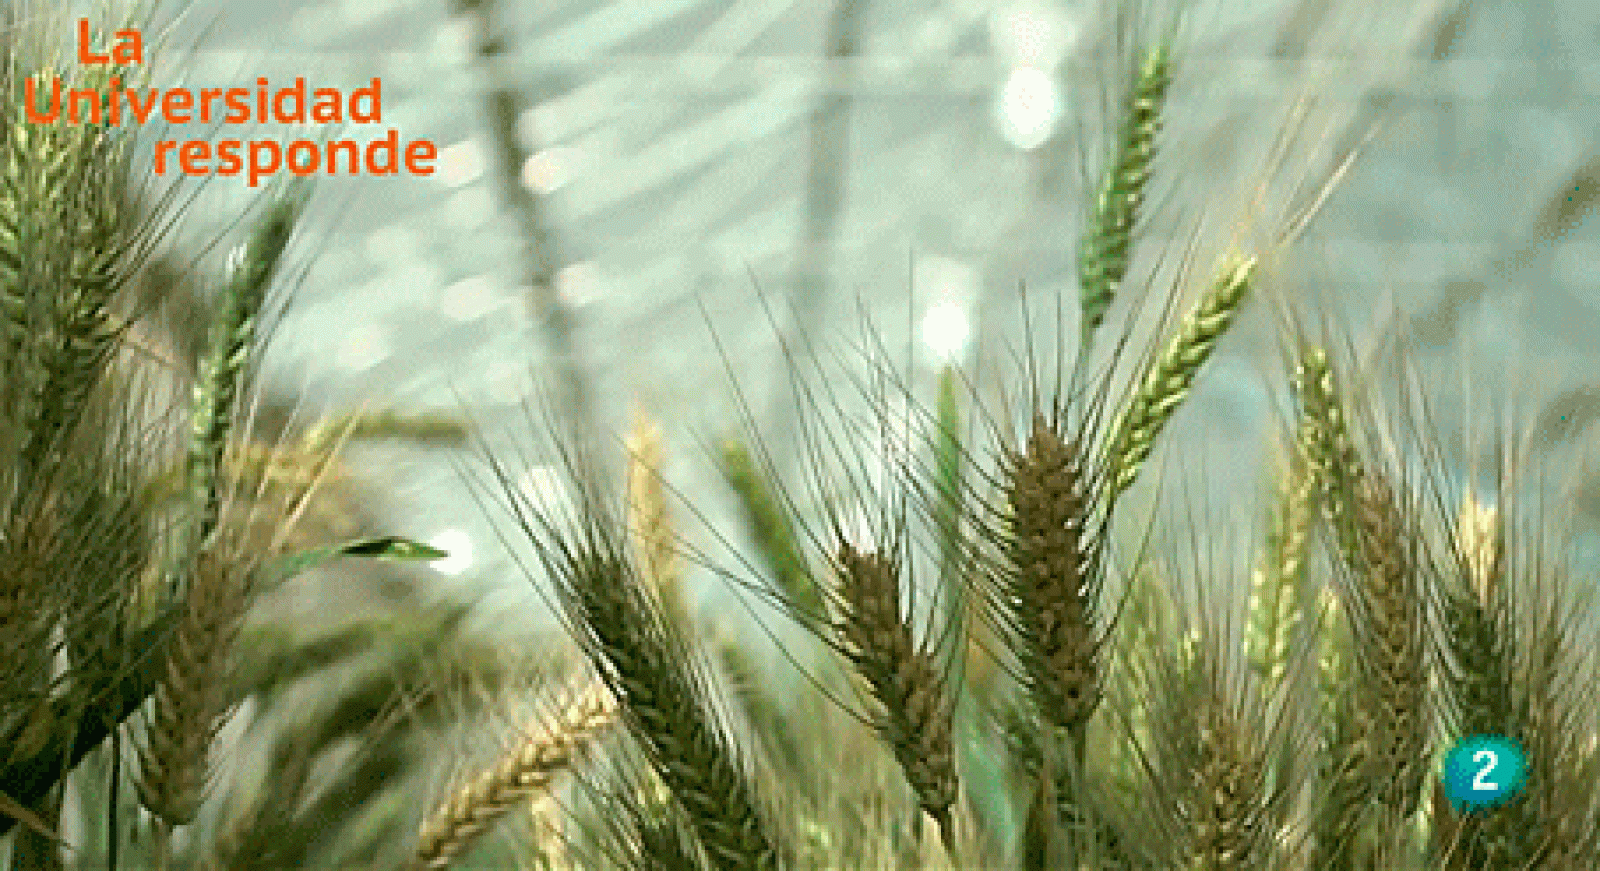 La aventura del saber seleccion genomica cultivo del trigo Córdoba Universidad Responde #AventuraSaberUResponde